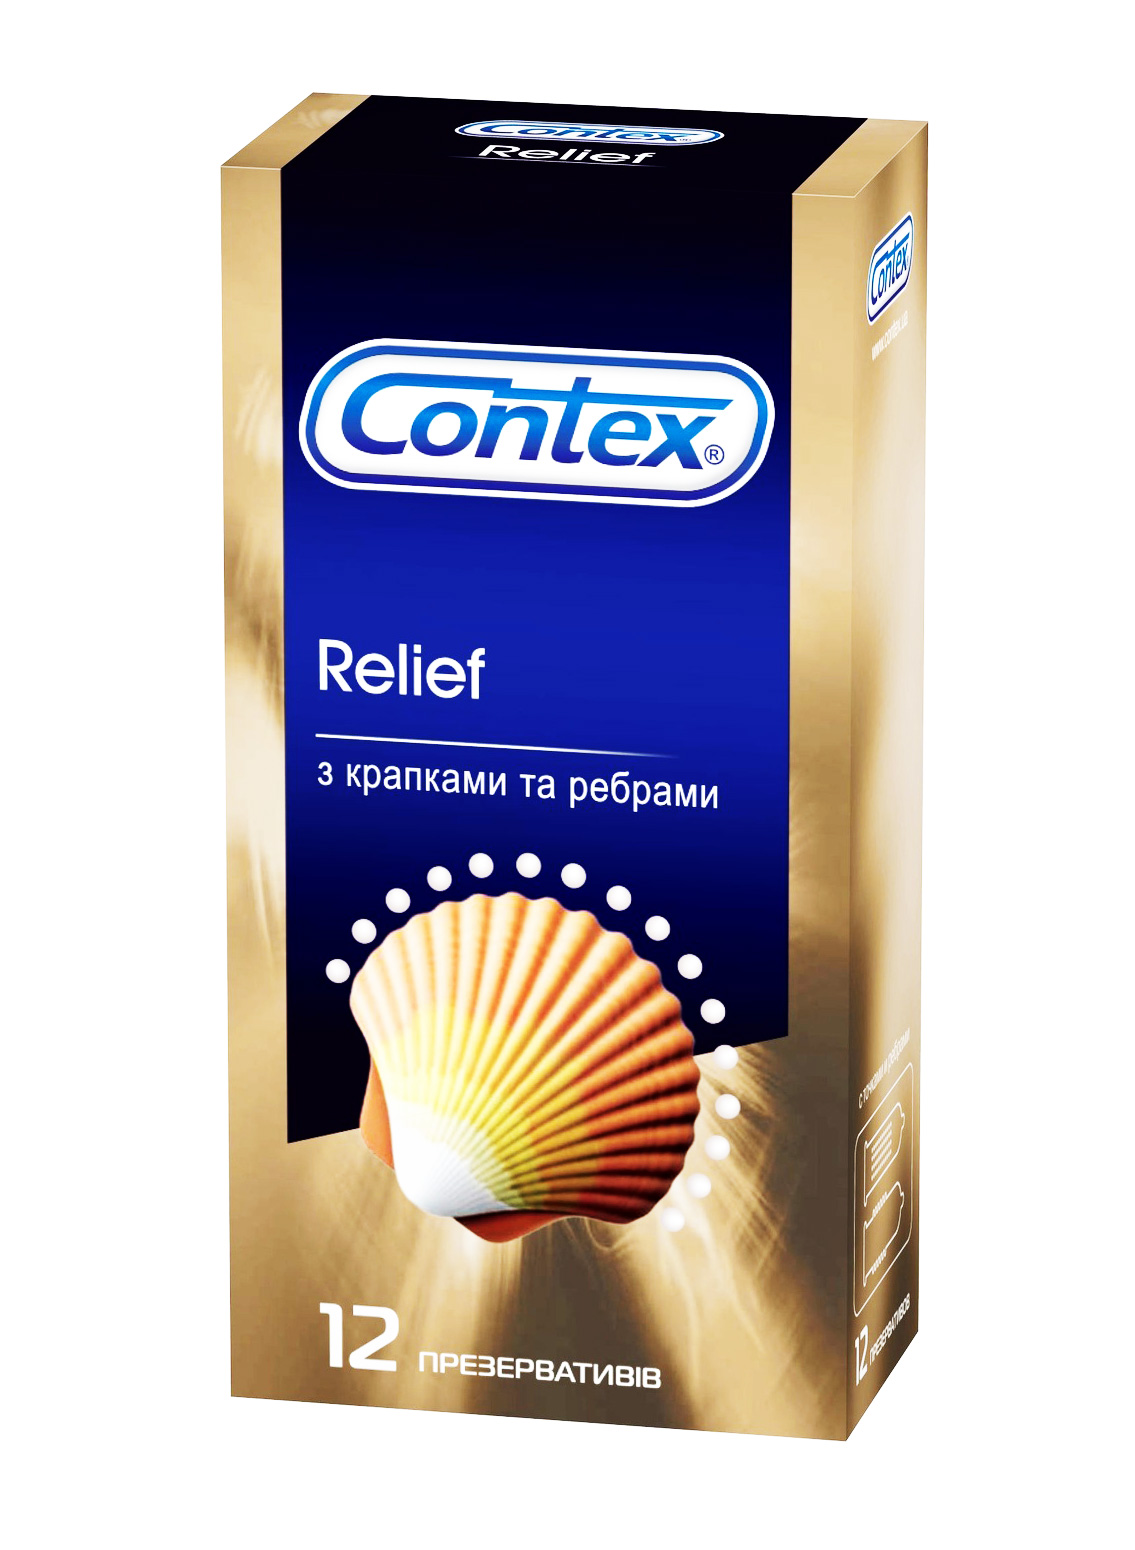 Contex Relief